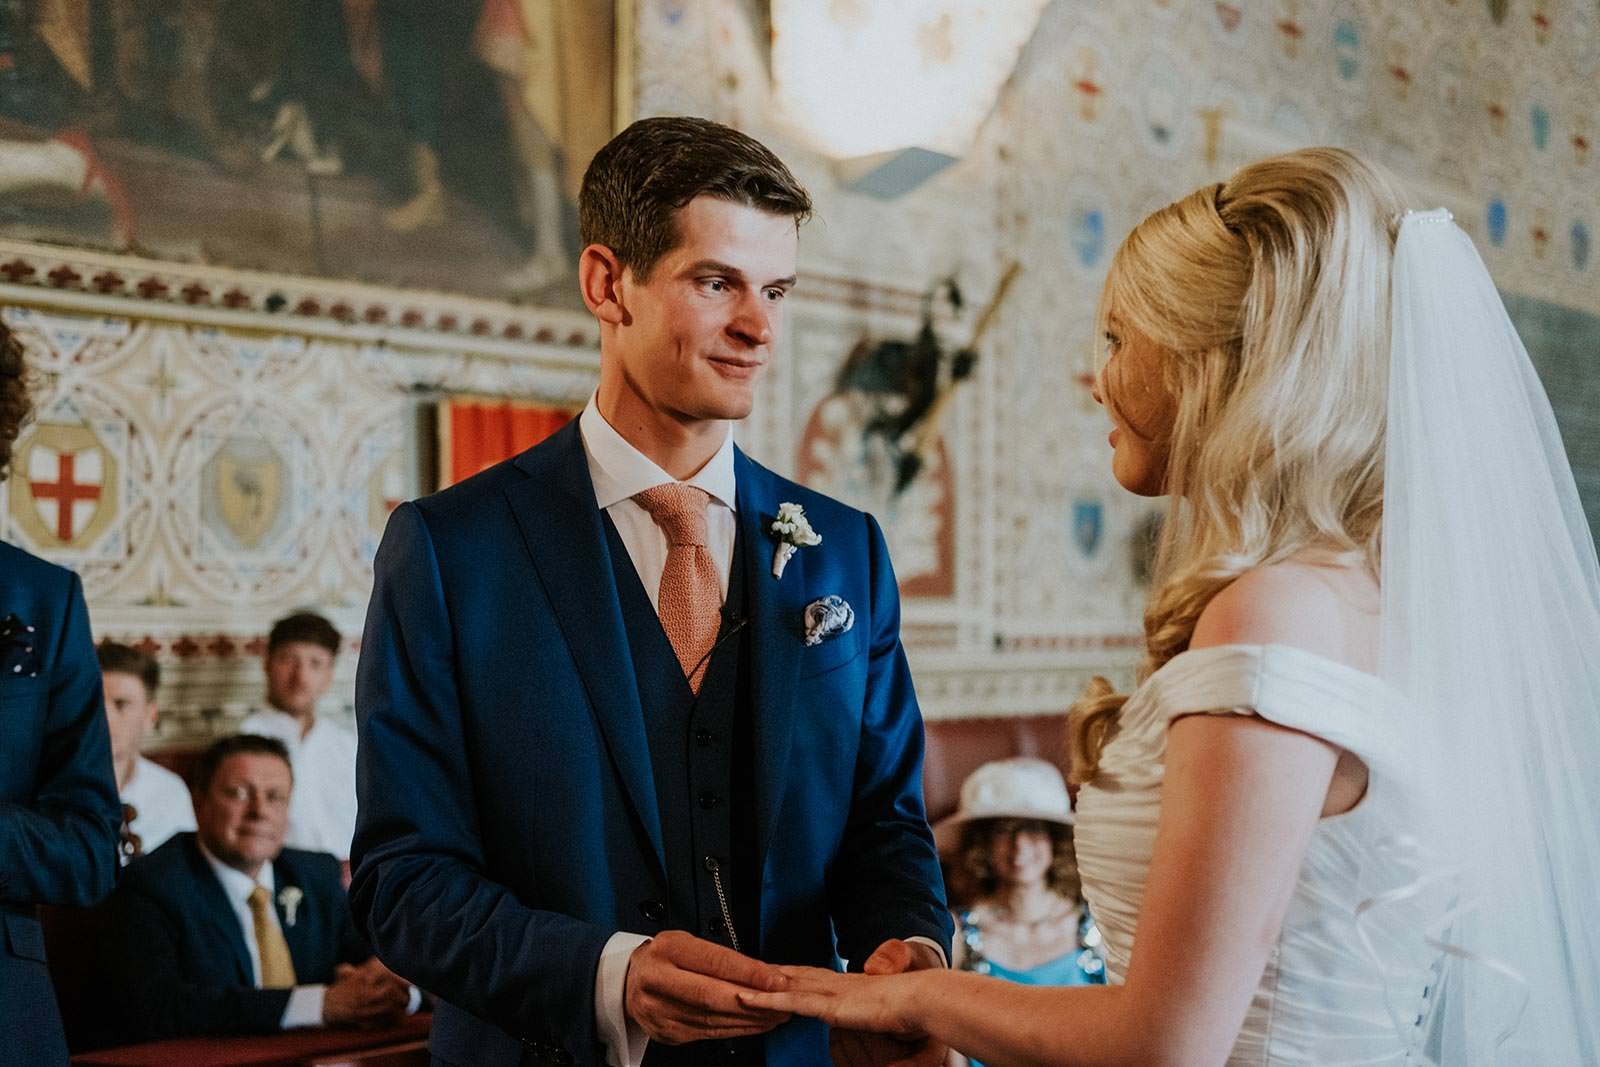 Ceremony - Wedding Ceremony in Volterra